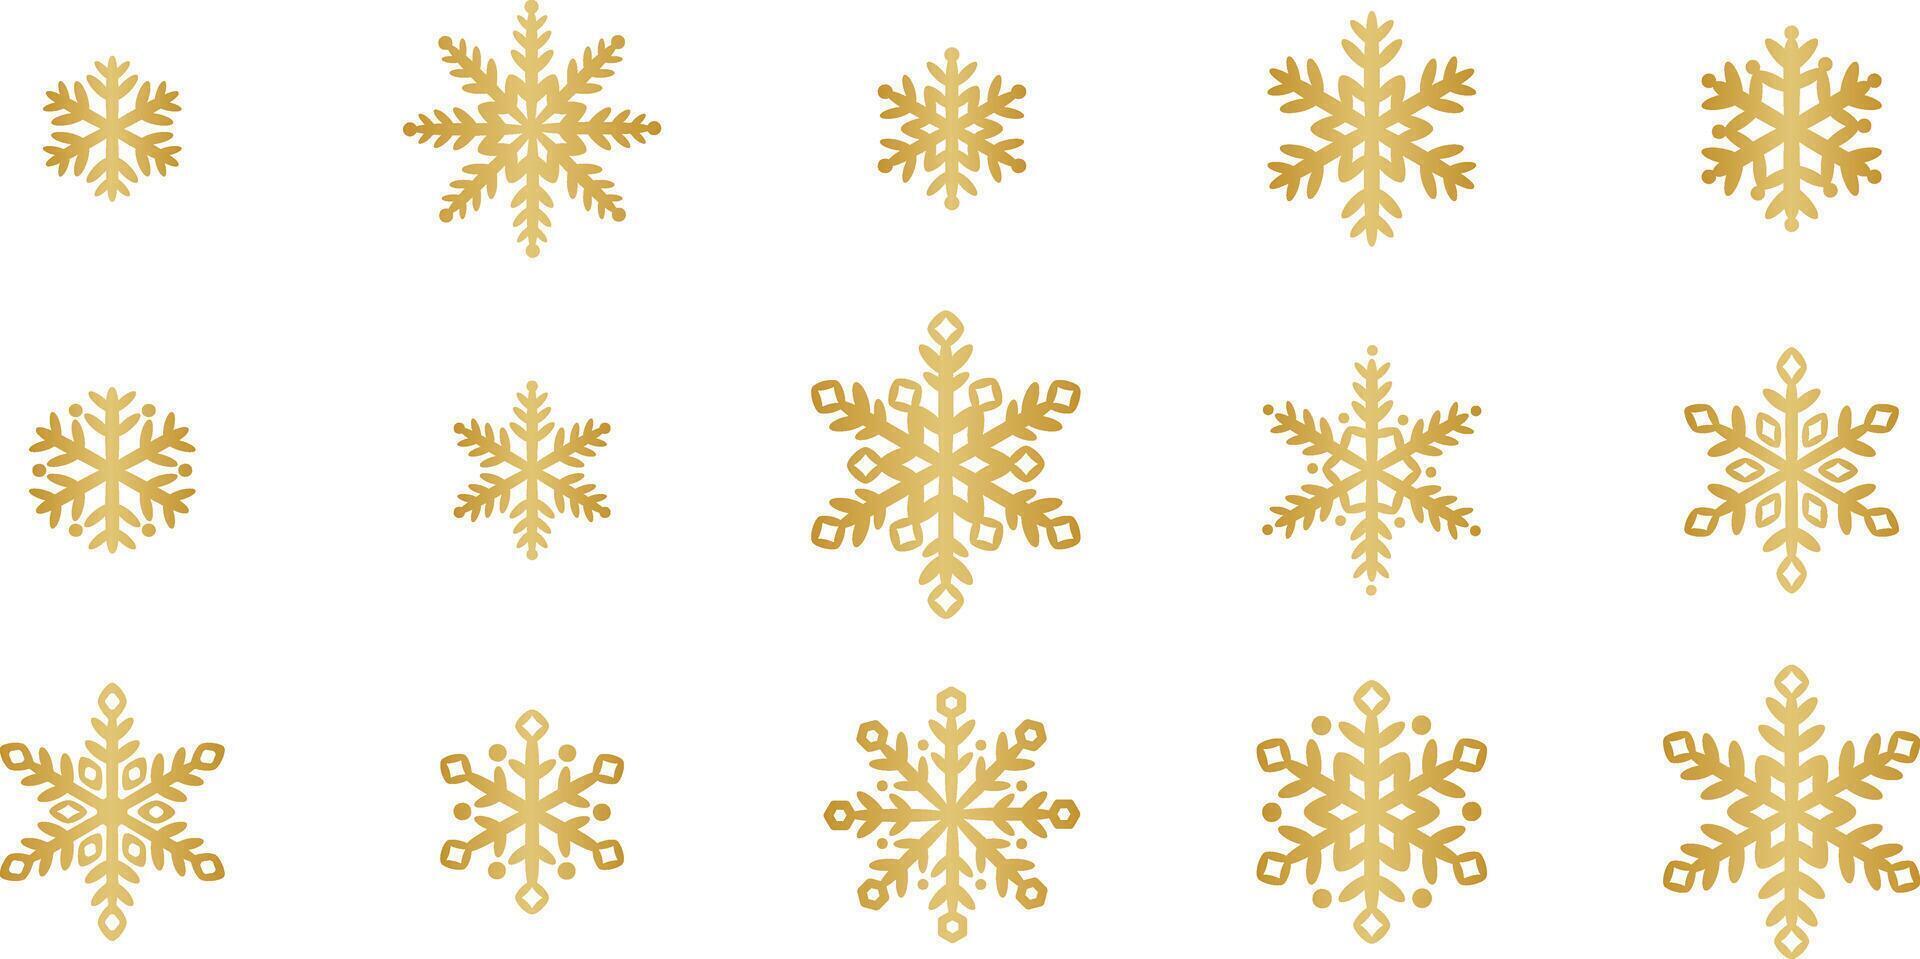 oro copo de nieve acortar Arte elementos, elegante degradado nieve símbolo decoración conjunto para el invierno, aislado vector